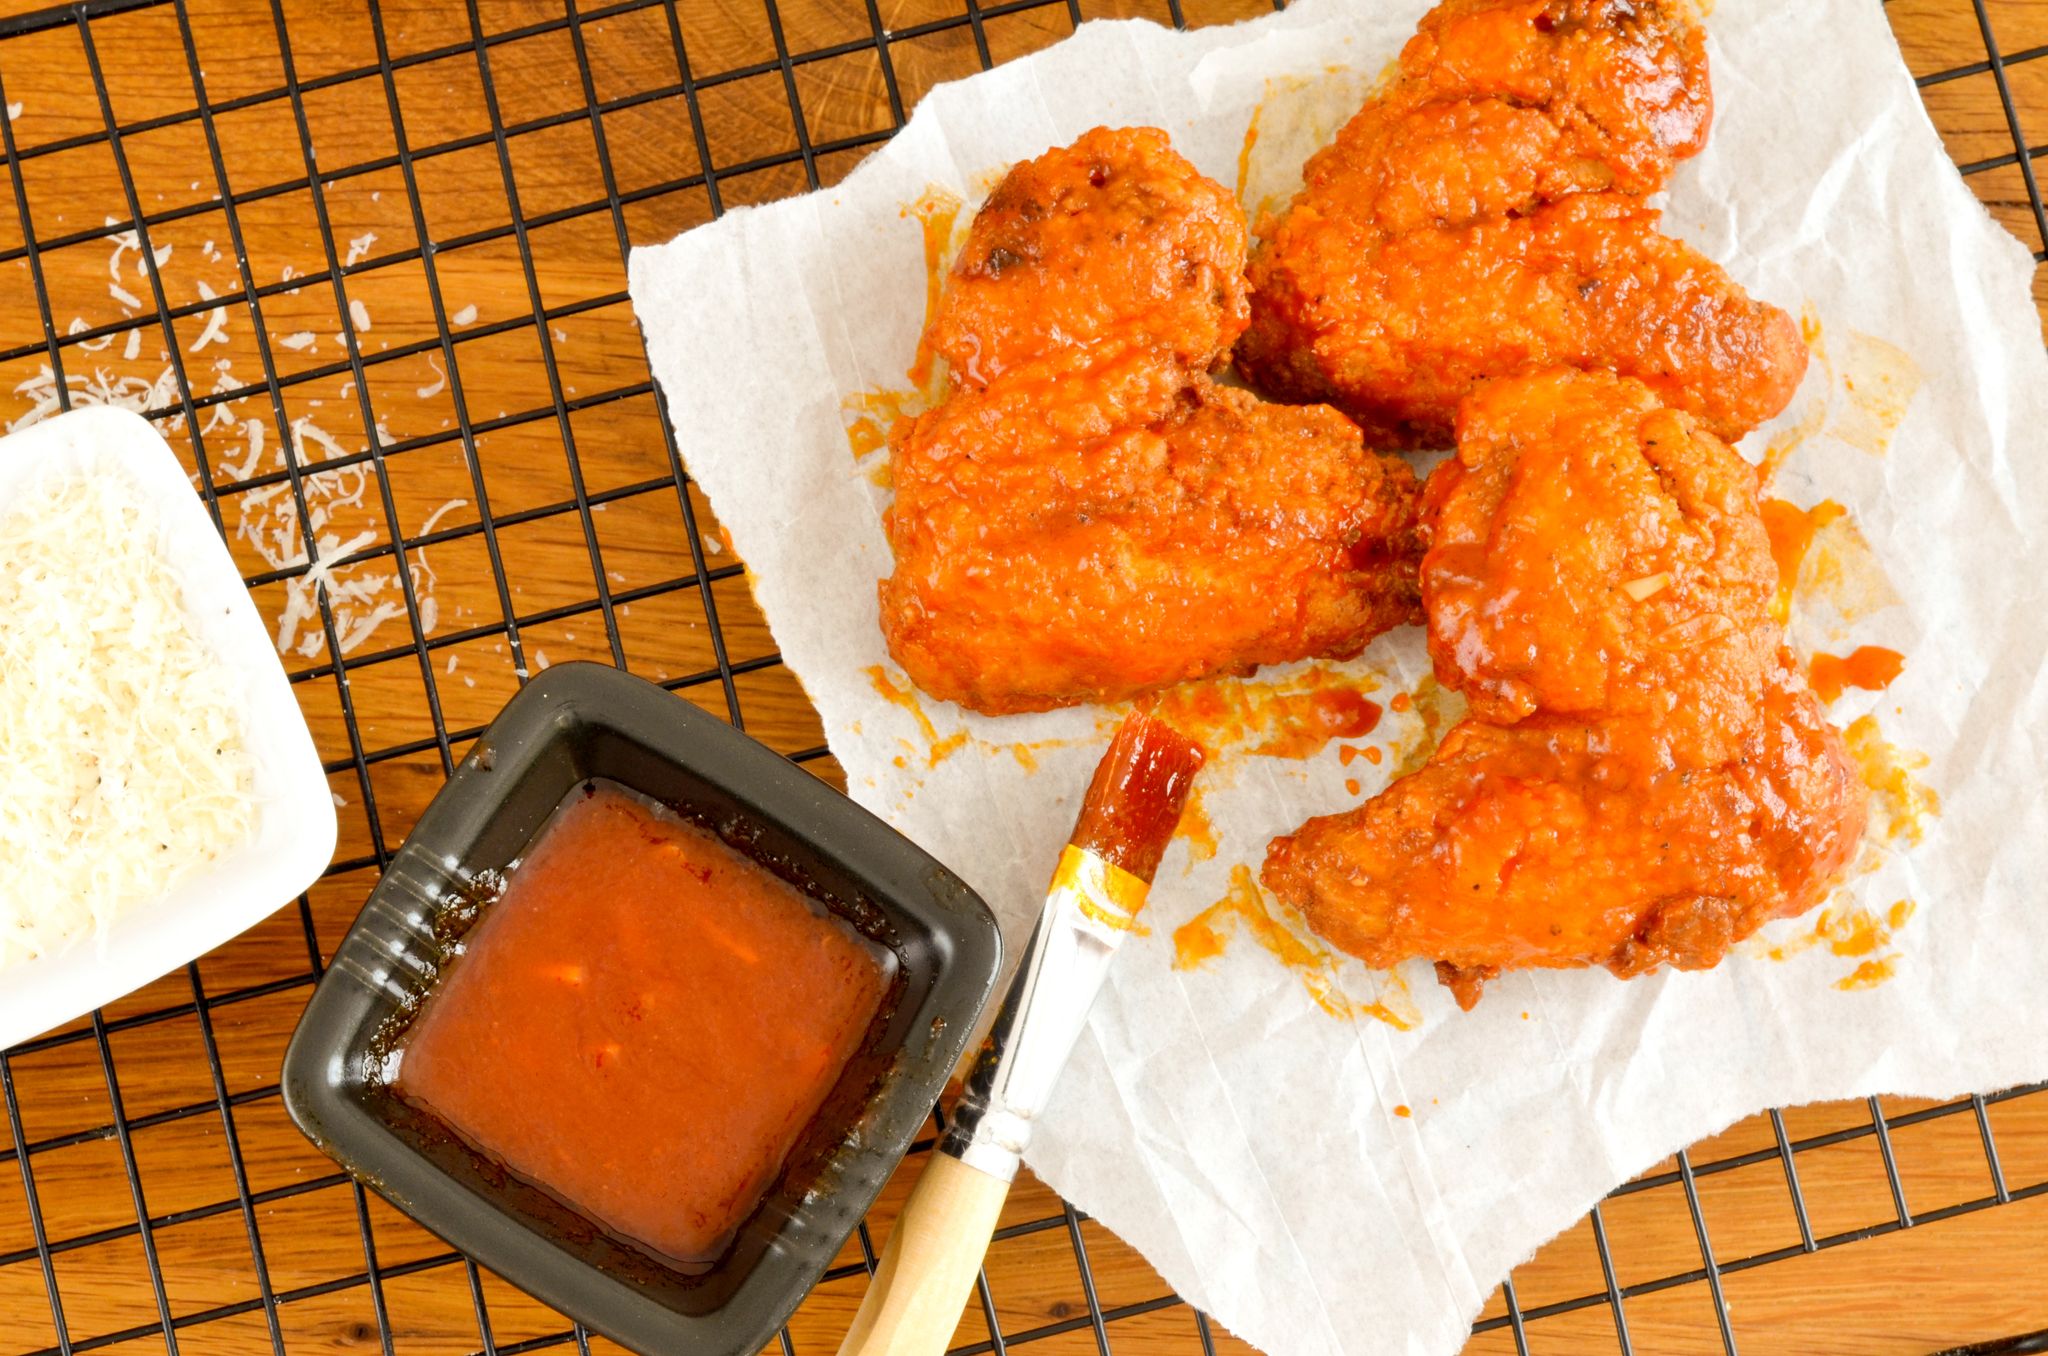 Der Trend "swicy" kombiniert süße und scharfe Geschmacksnoten, und lässt sich kreativ in Gerichten wie leckeren Chicken-Wings mit Chili-Honig oder einer Ingwer-Chili-Limonade umsetzen.